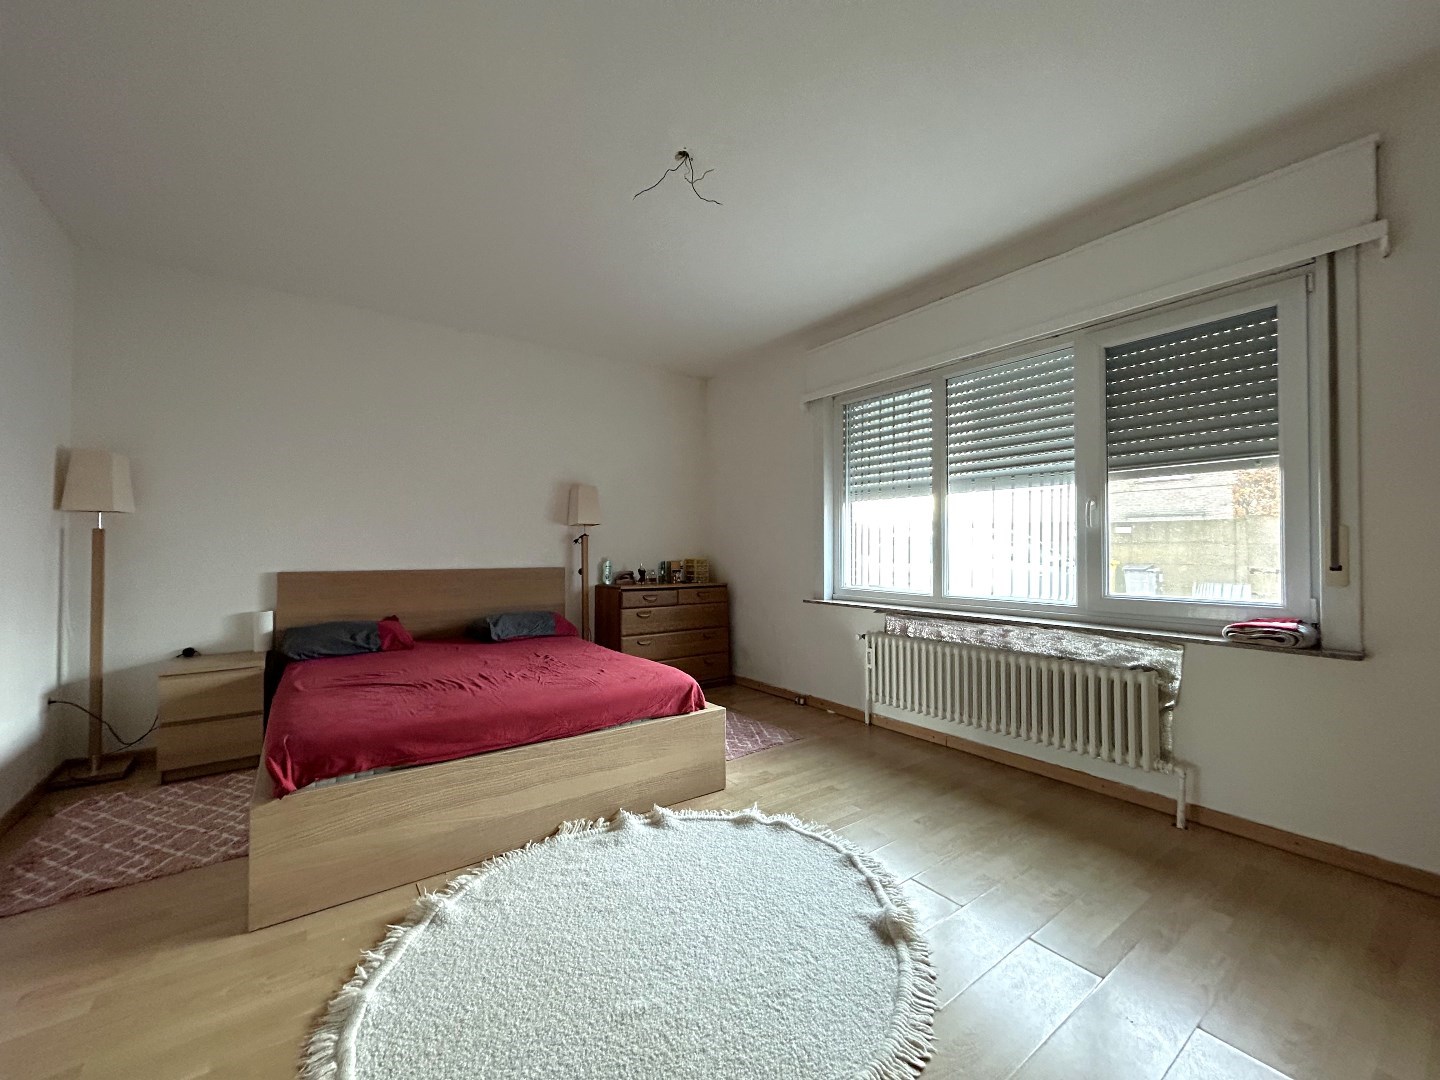 Appartement met 2 slaapkamers in centrum Turnhout 